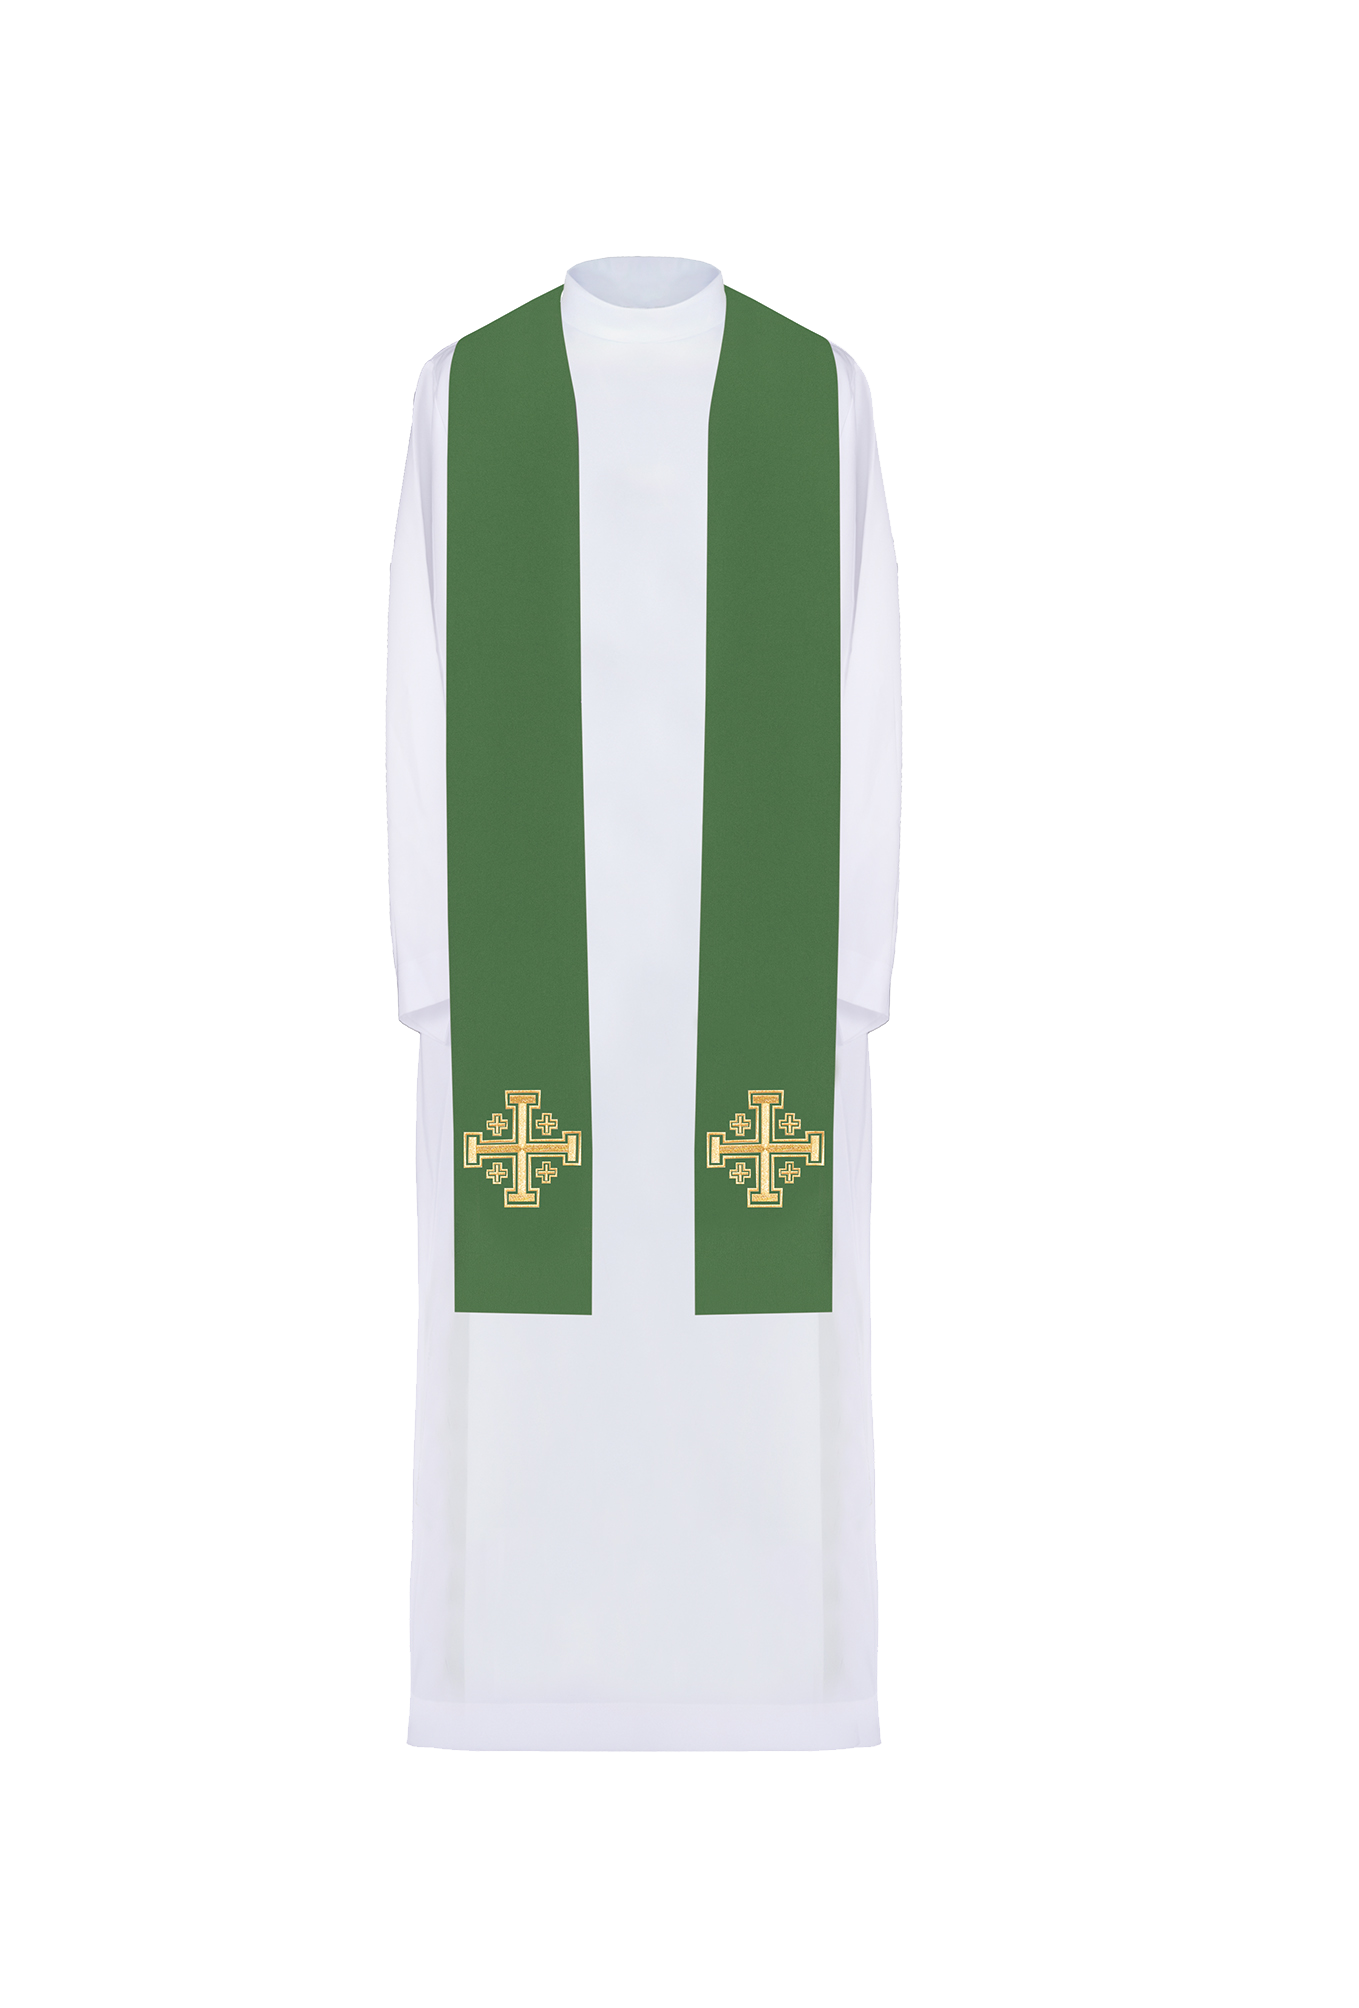 Stuła kapłańska haftowana zielona Krzyż Jerozolimski